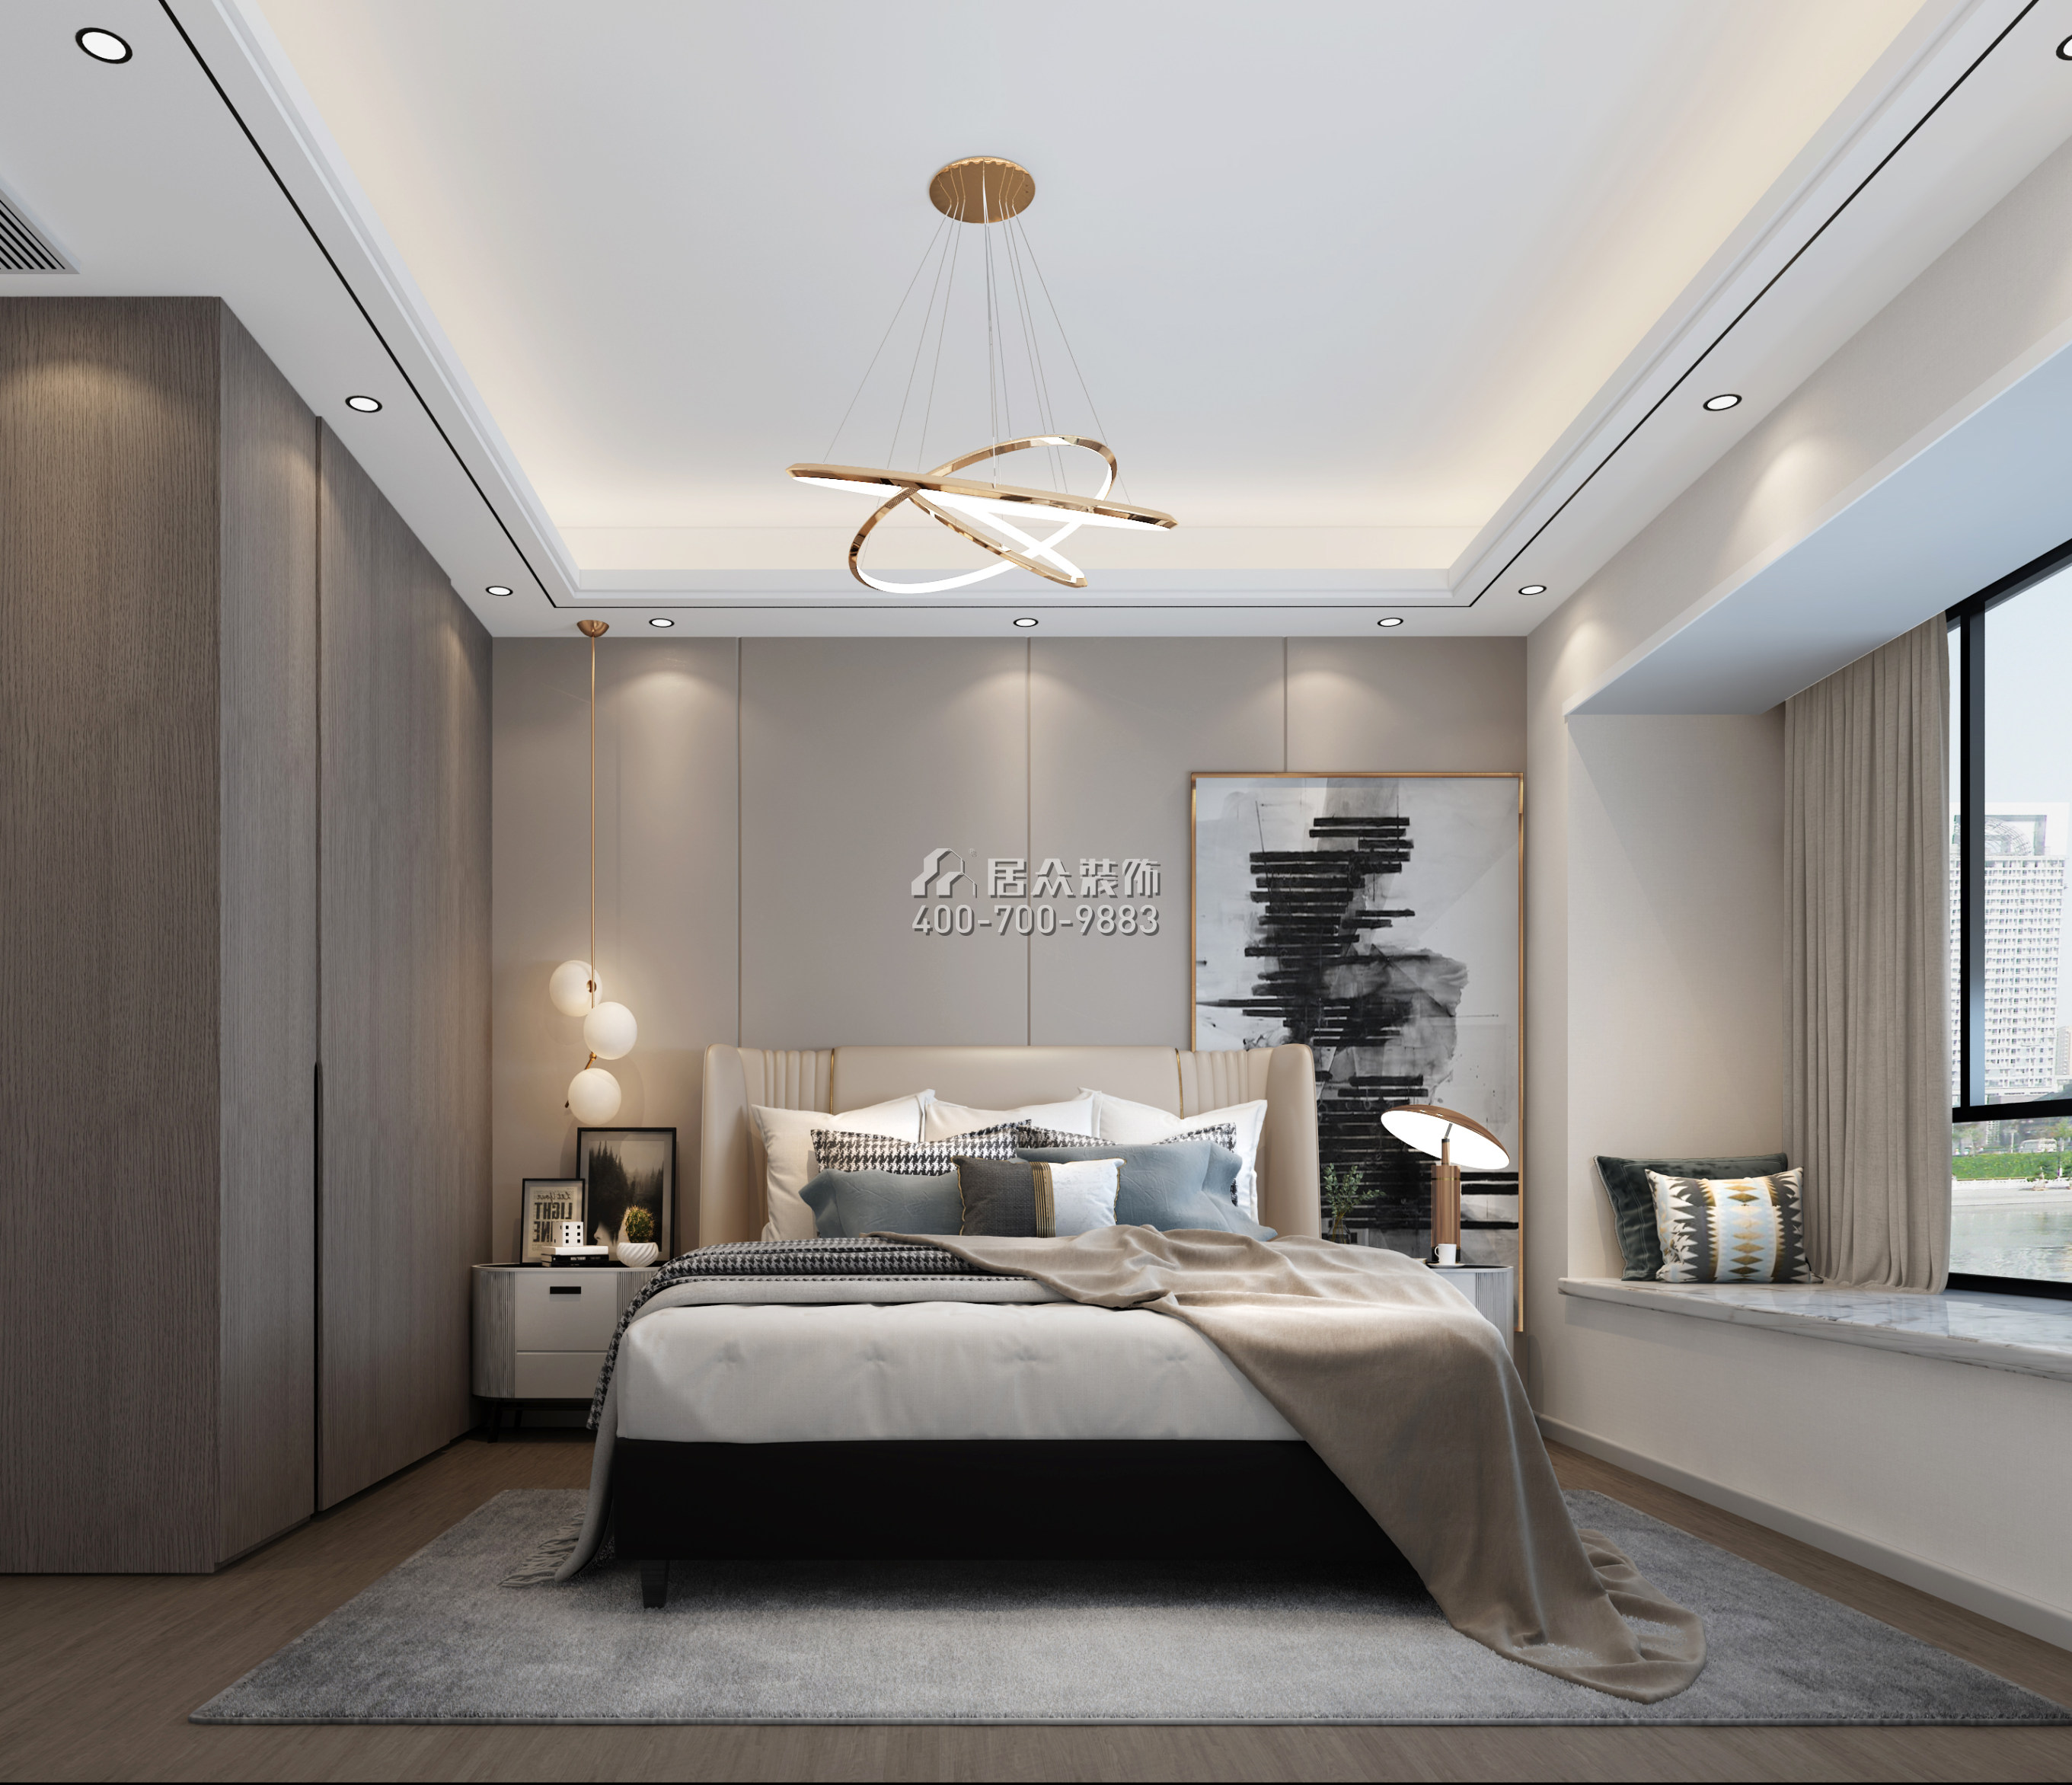 中信紅樹灣-三期300平方米現代簡約風格平層戶型臥室裝修效果圖